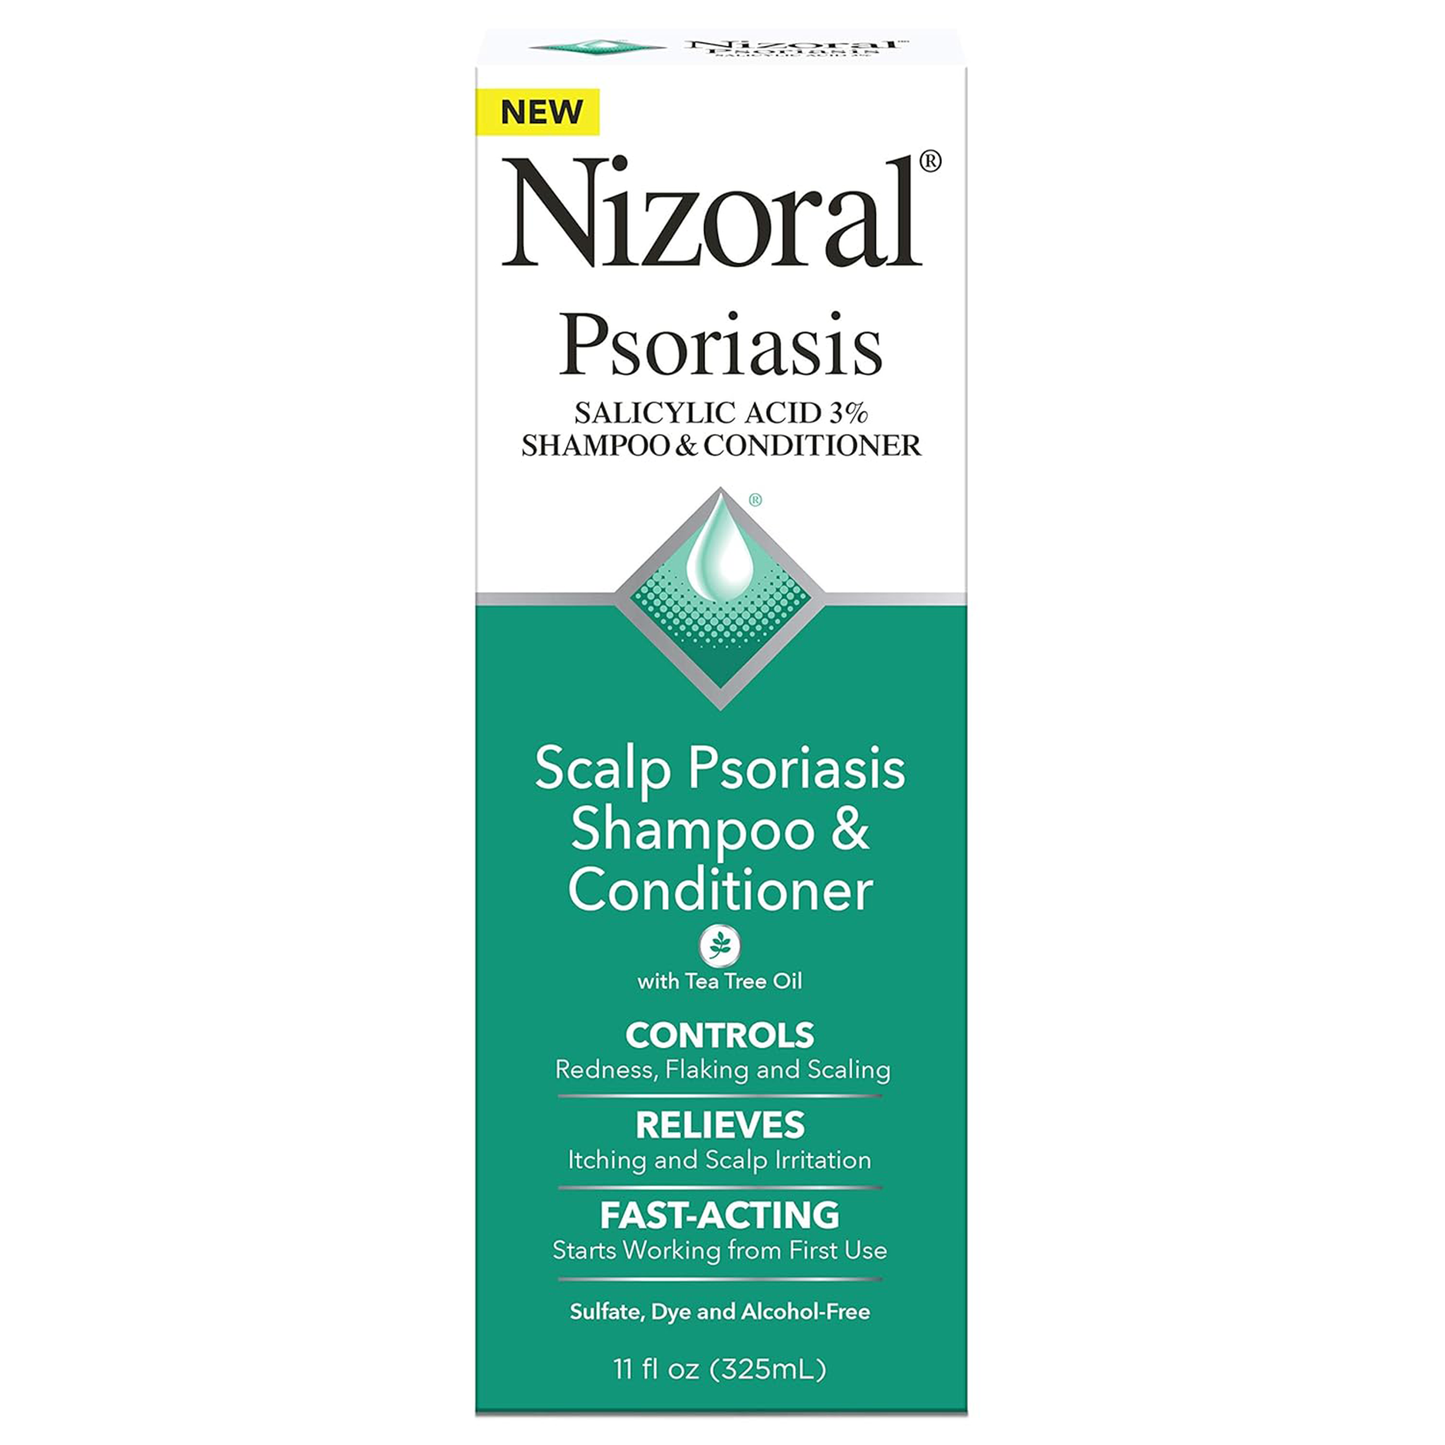 Nizoral ®️ Psoriasis Salicylic Acid 3% Shampoo & Conditioner • Hoofdhuid Psoriasis Shampoo & Conditioner Tegen Schilfers, Jeuk, Irritatie & Roodheid • 1x325ml